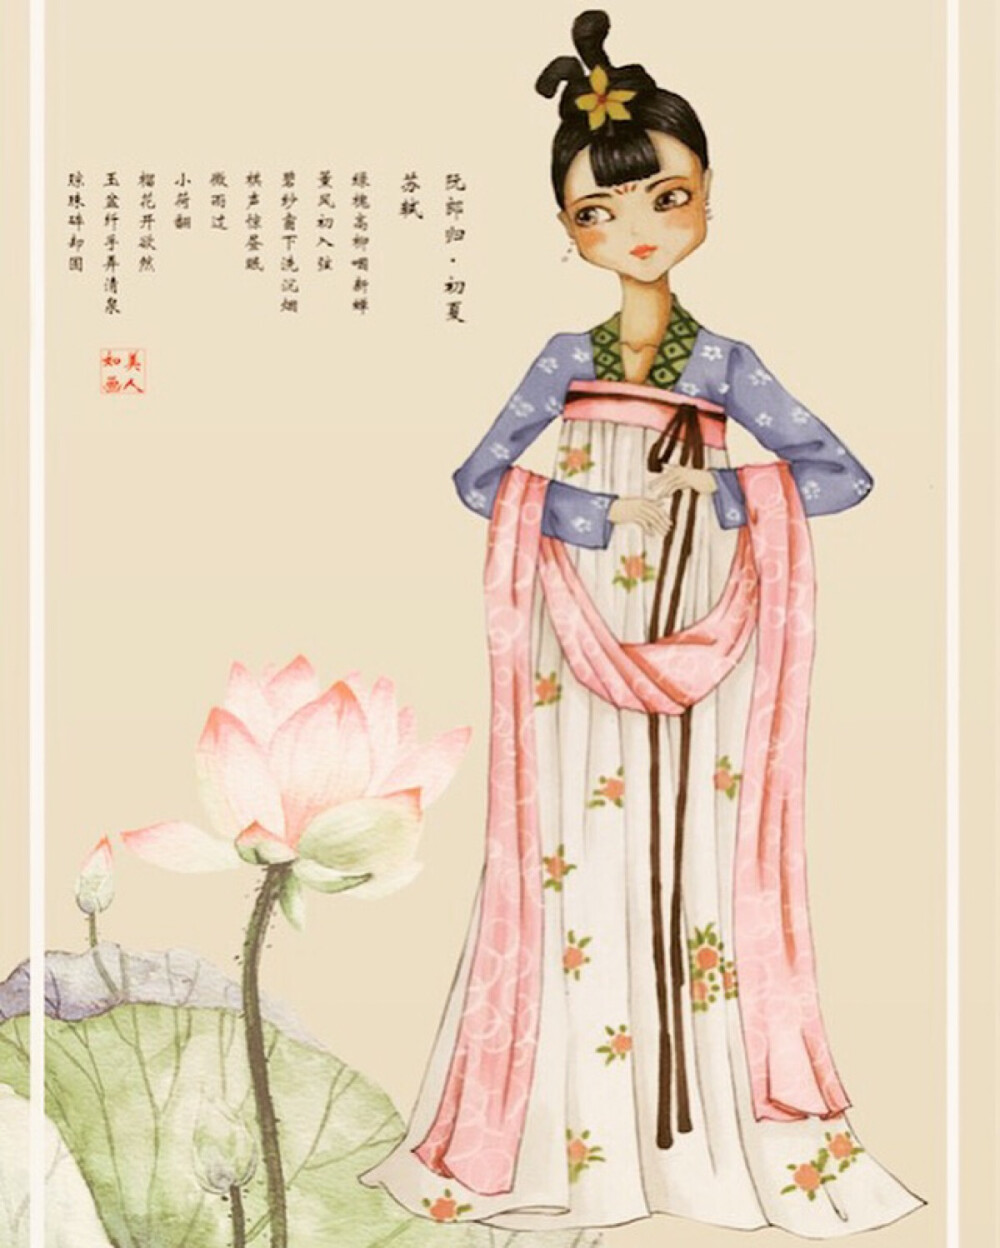 古风 中国风 手绘 插画 马克笔 水彩 时装画